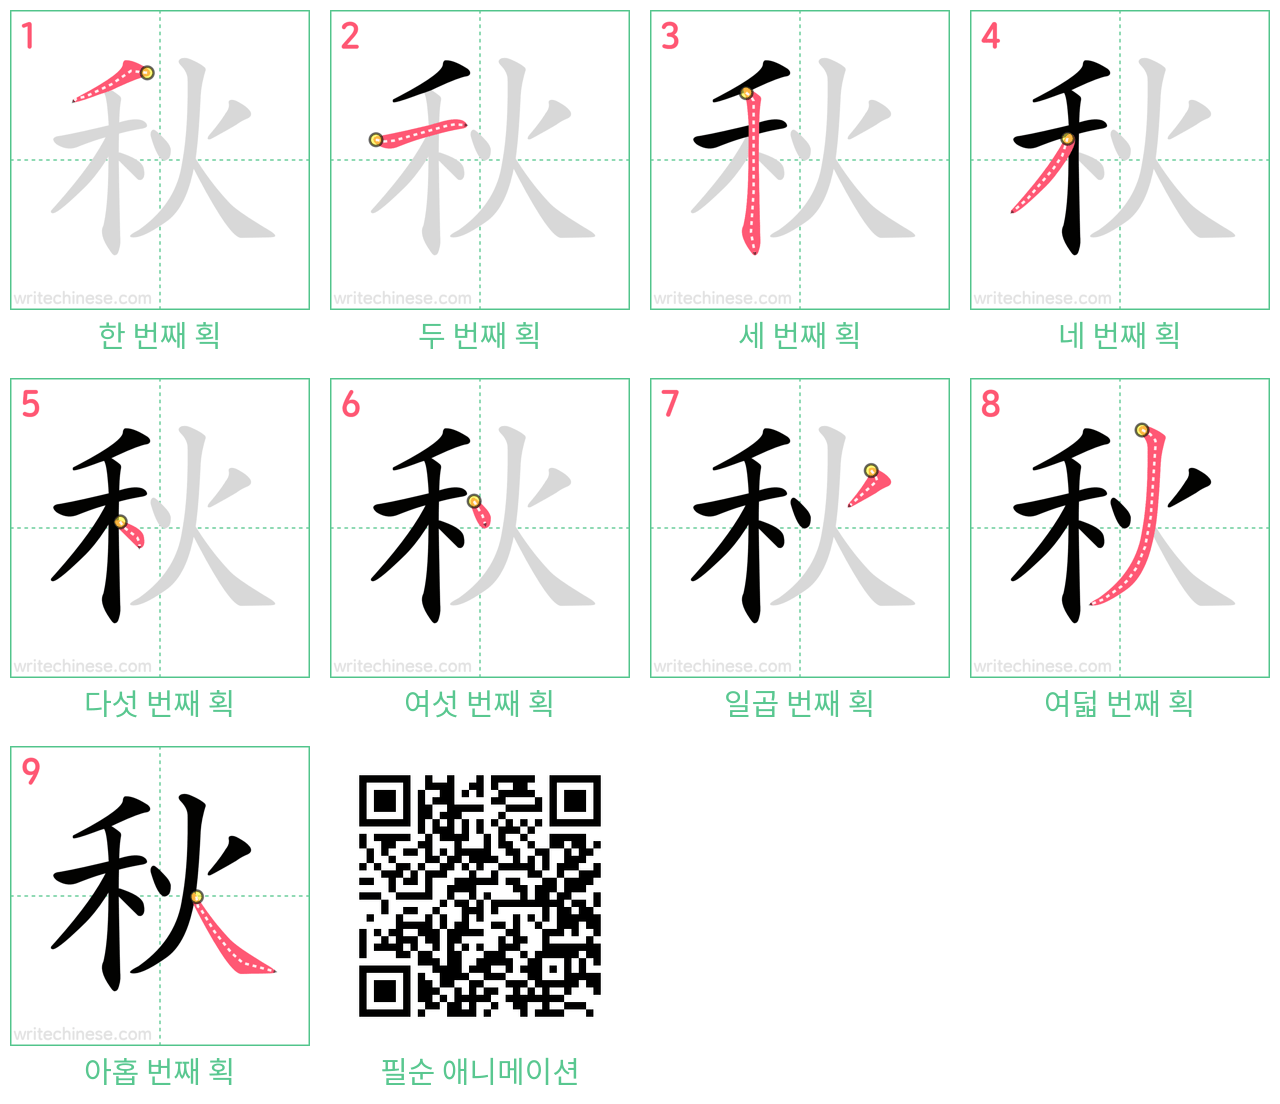 秋 step-by-step stroke order diagrams